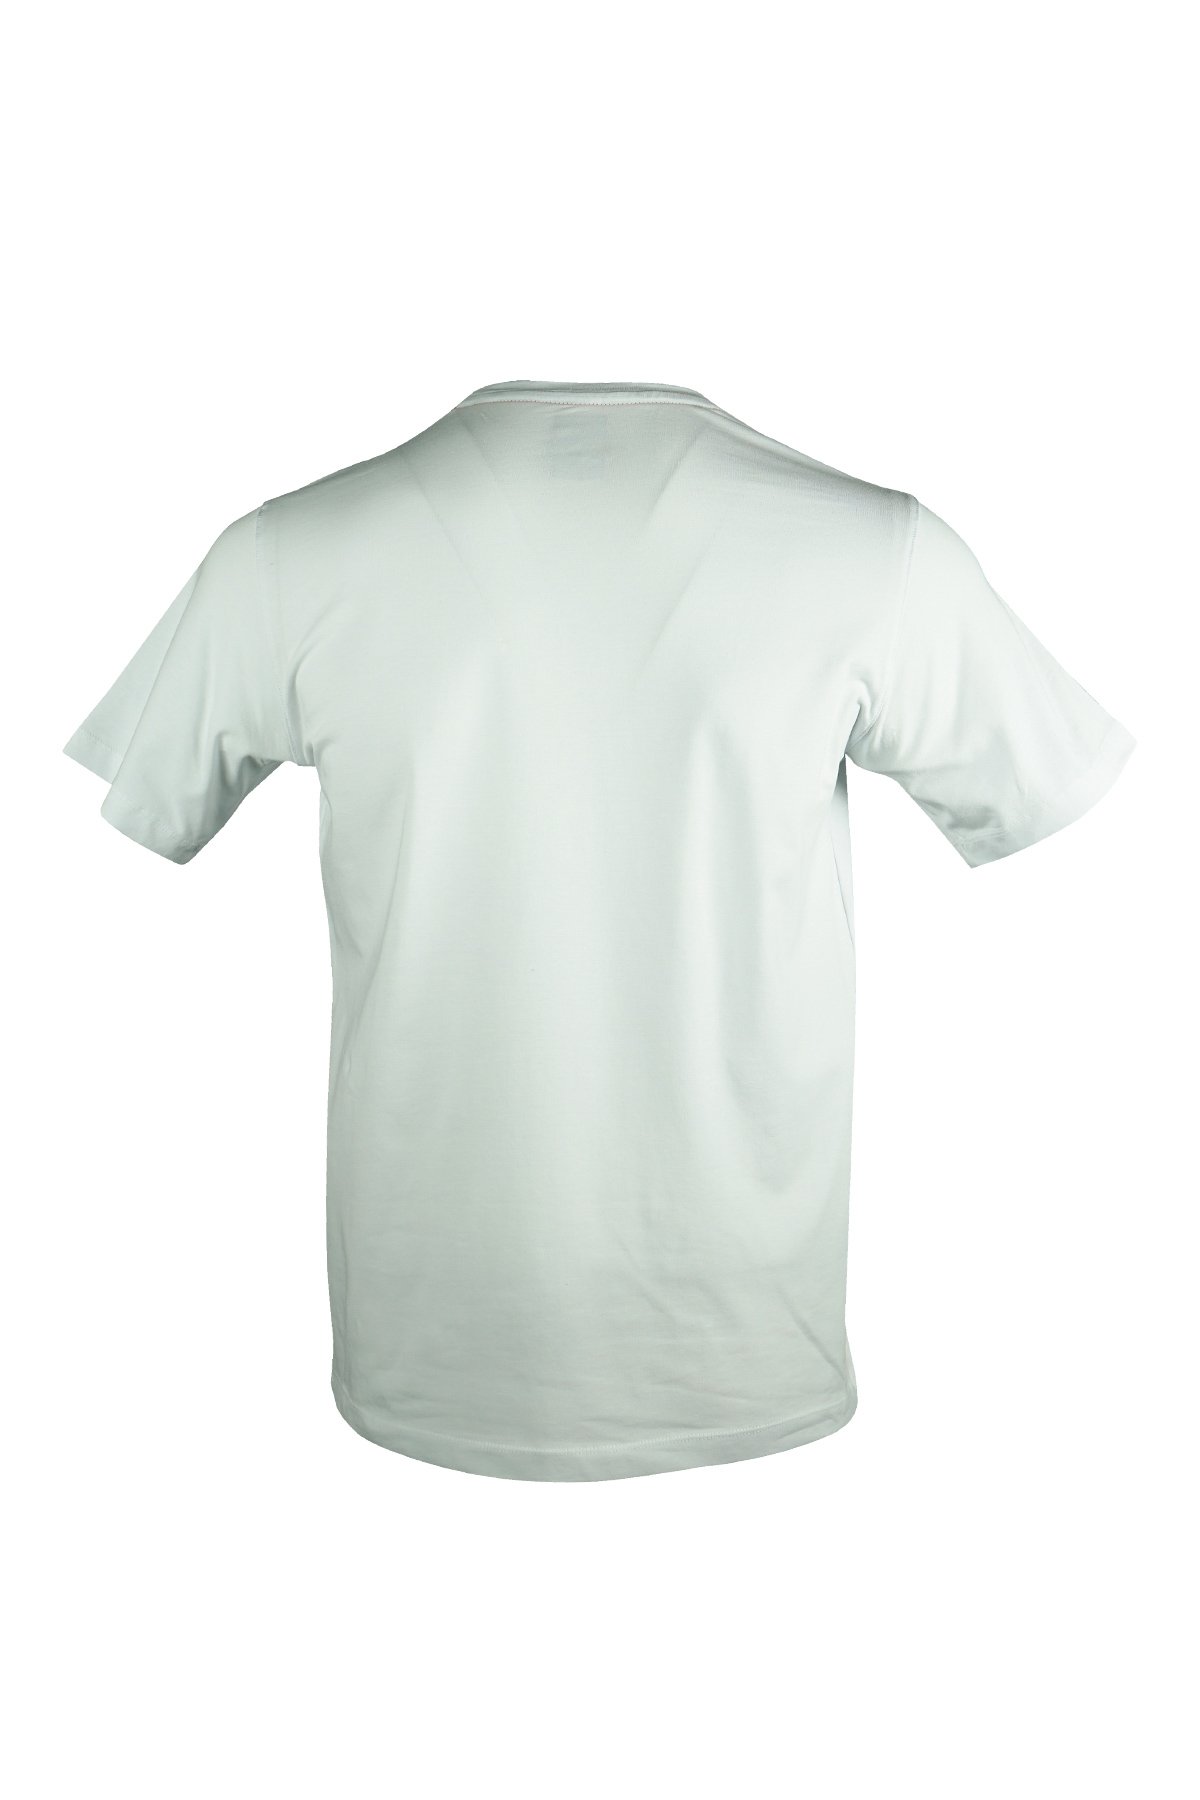 Casual Neo Organic T-Shirt